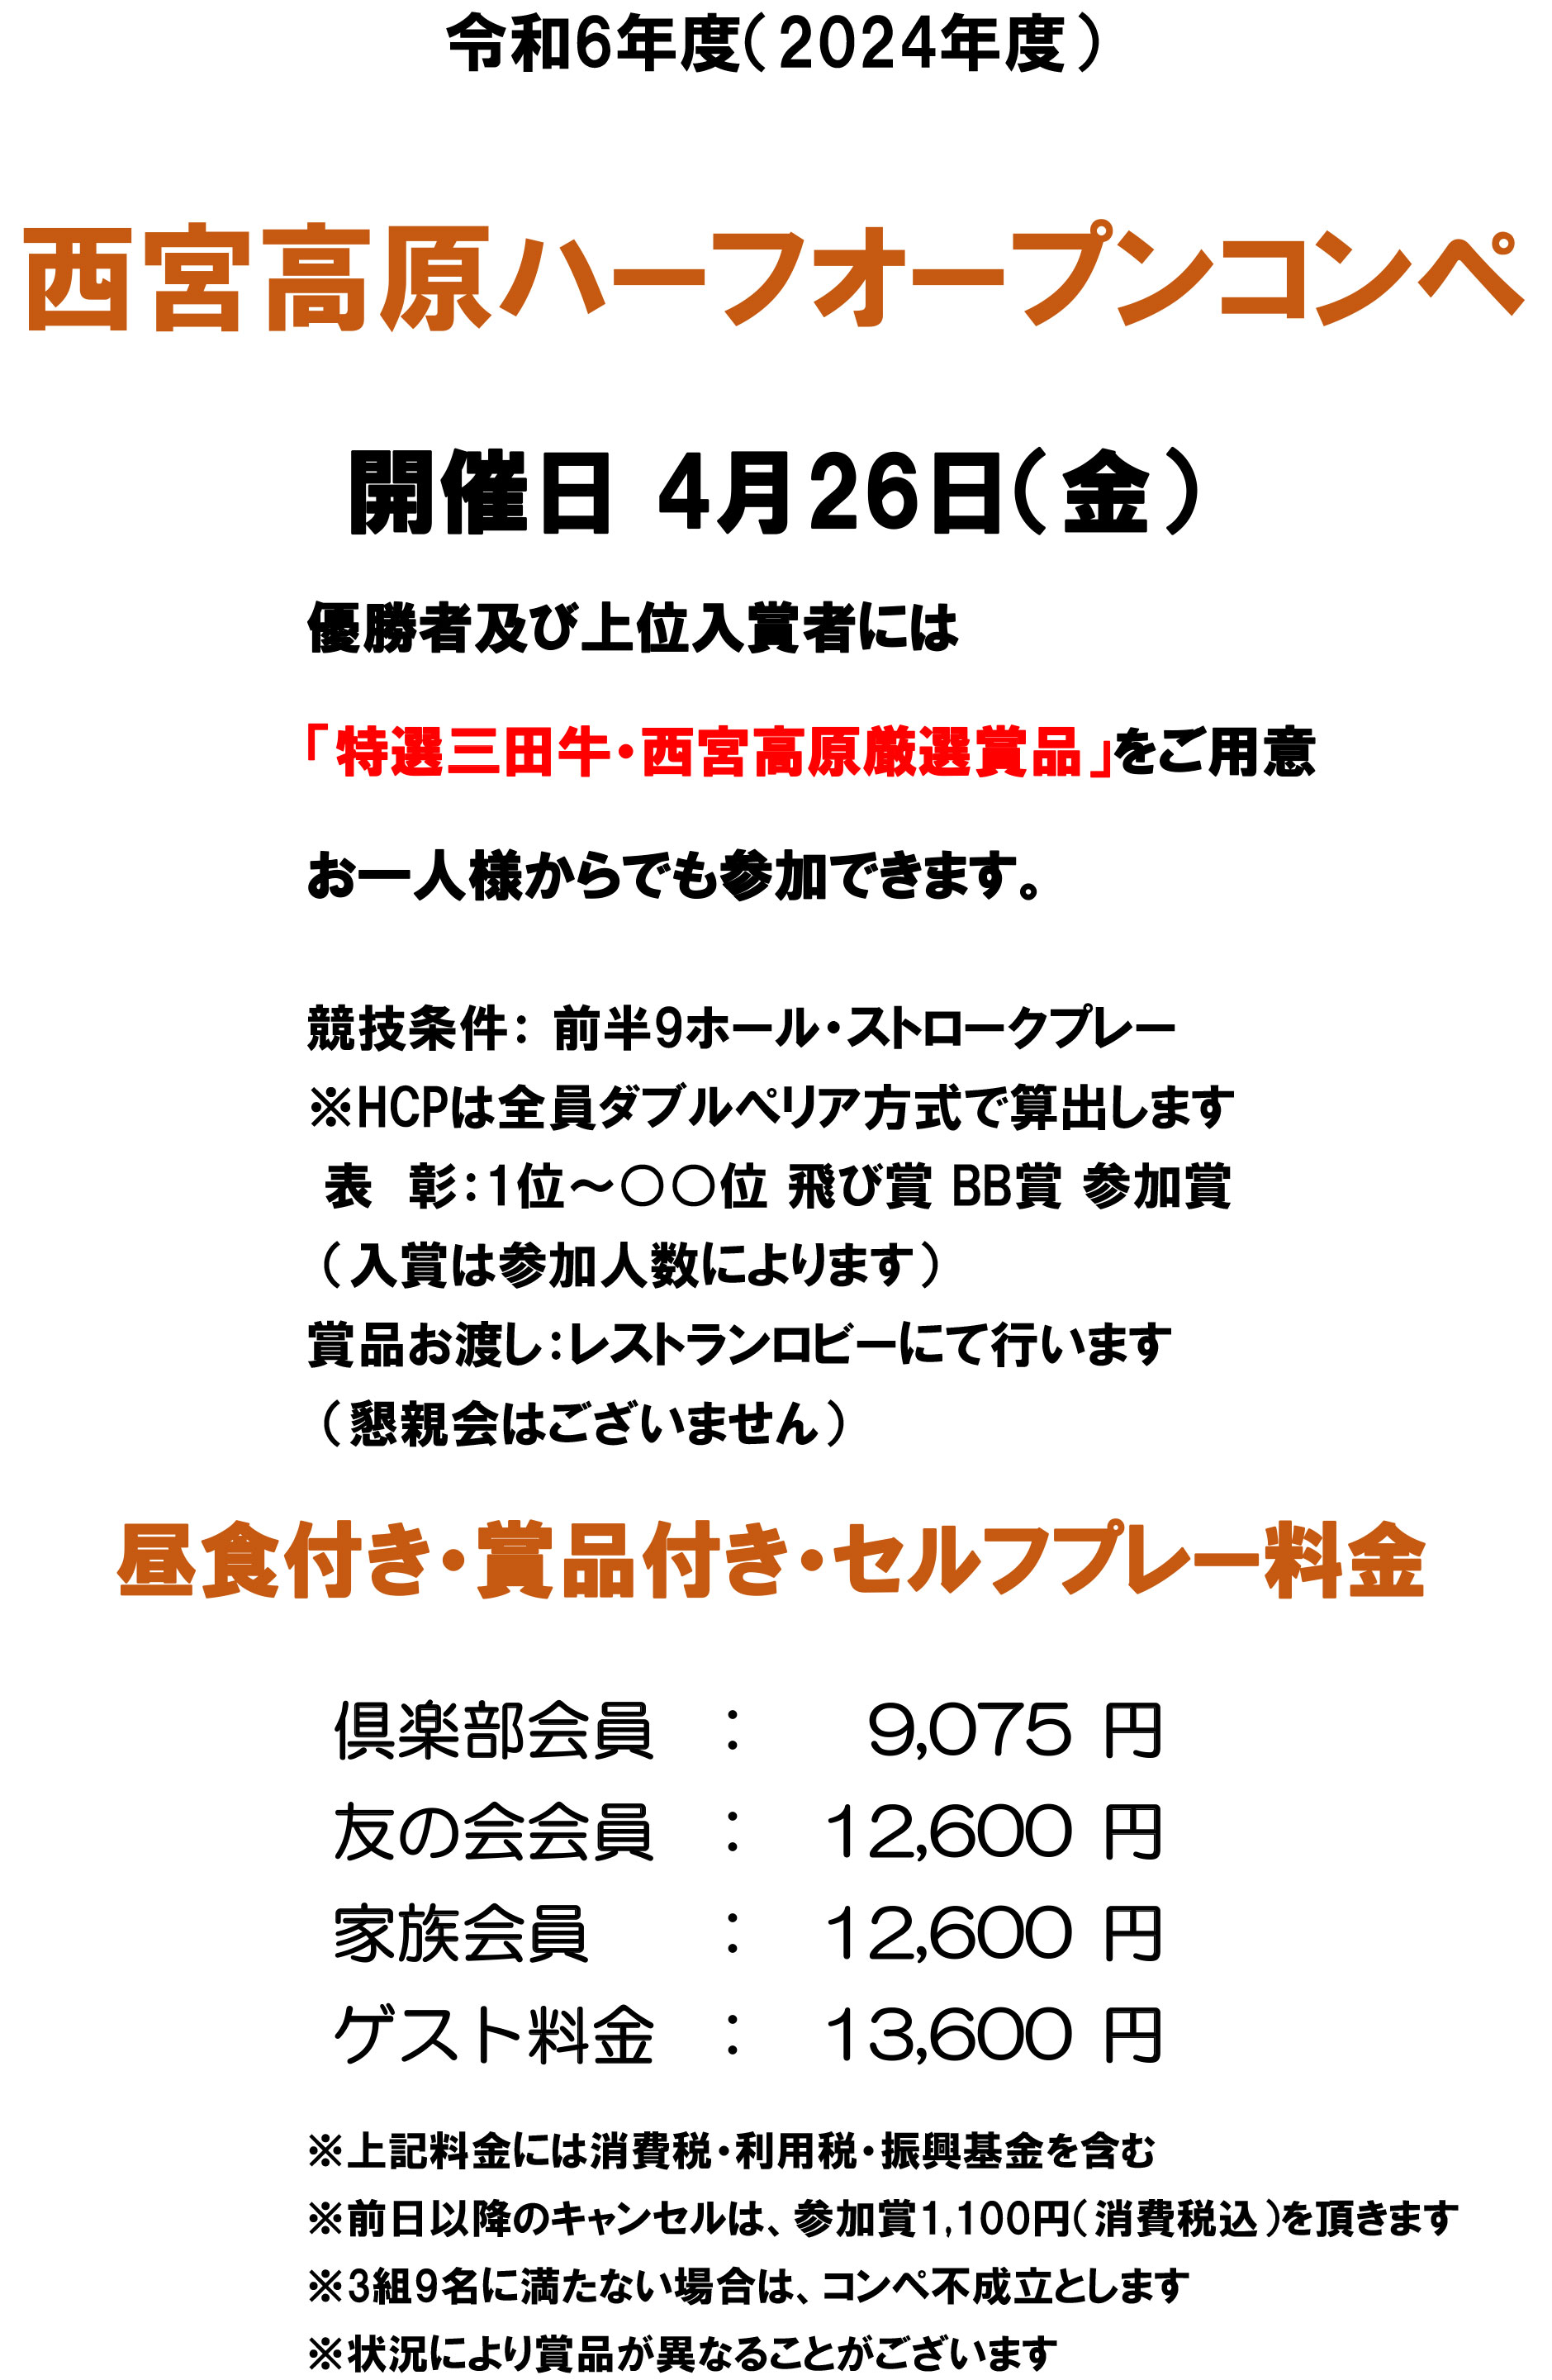 三田特産品ハーフオープンコンペ開催日 4月26日